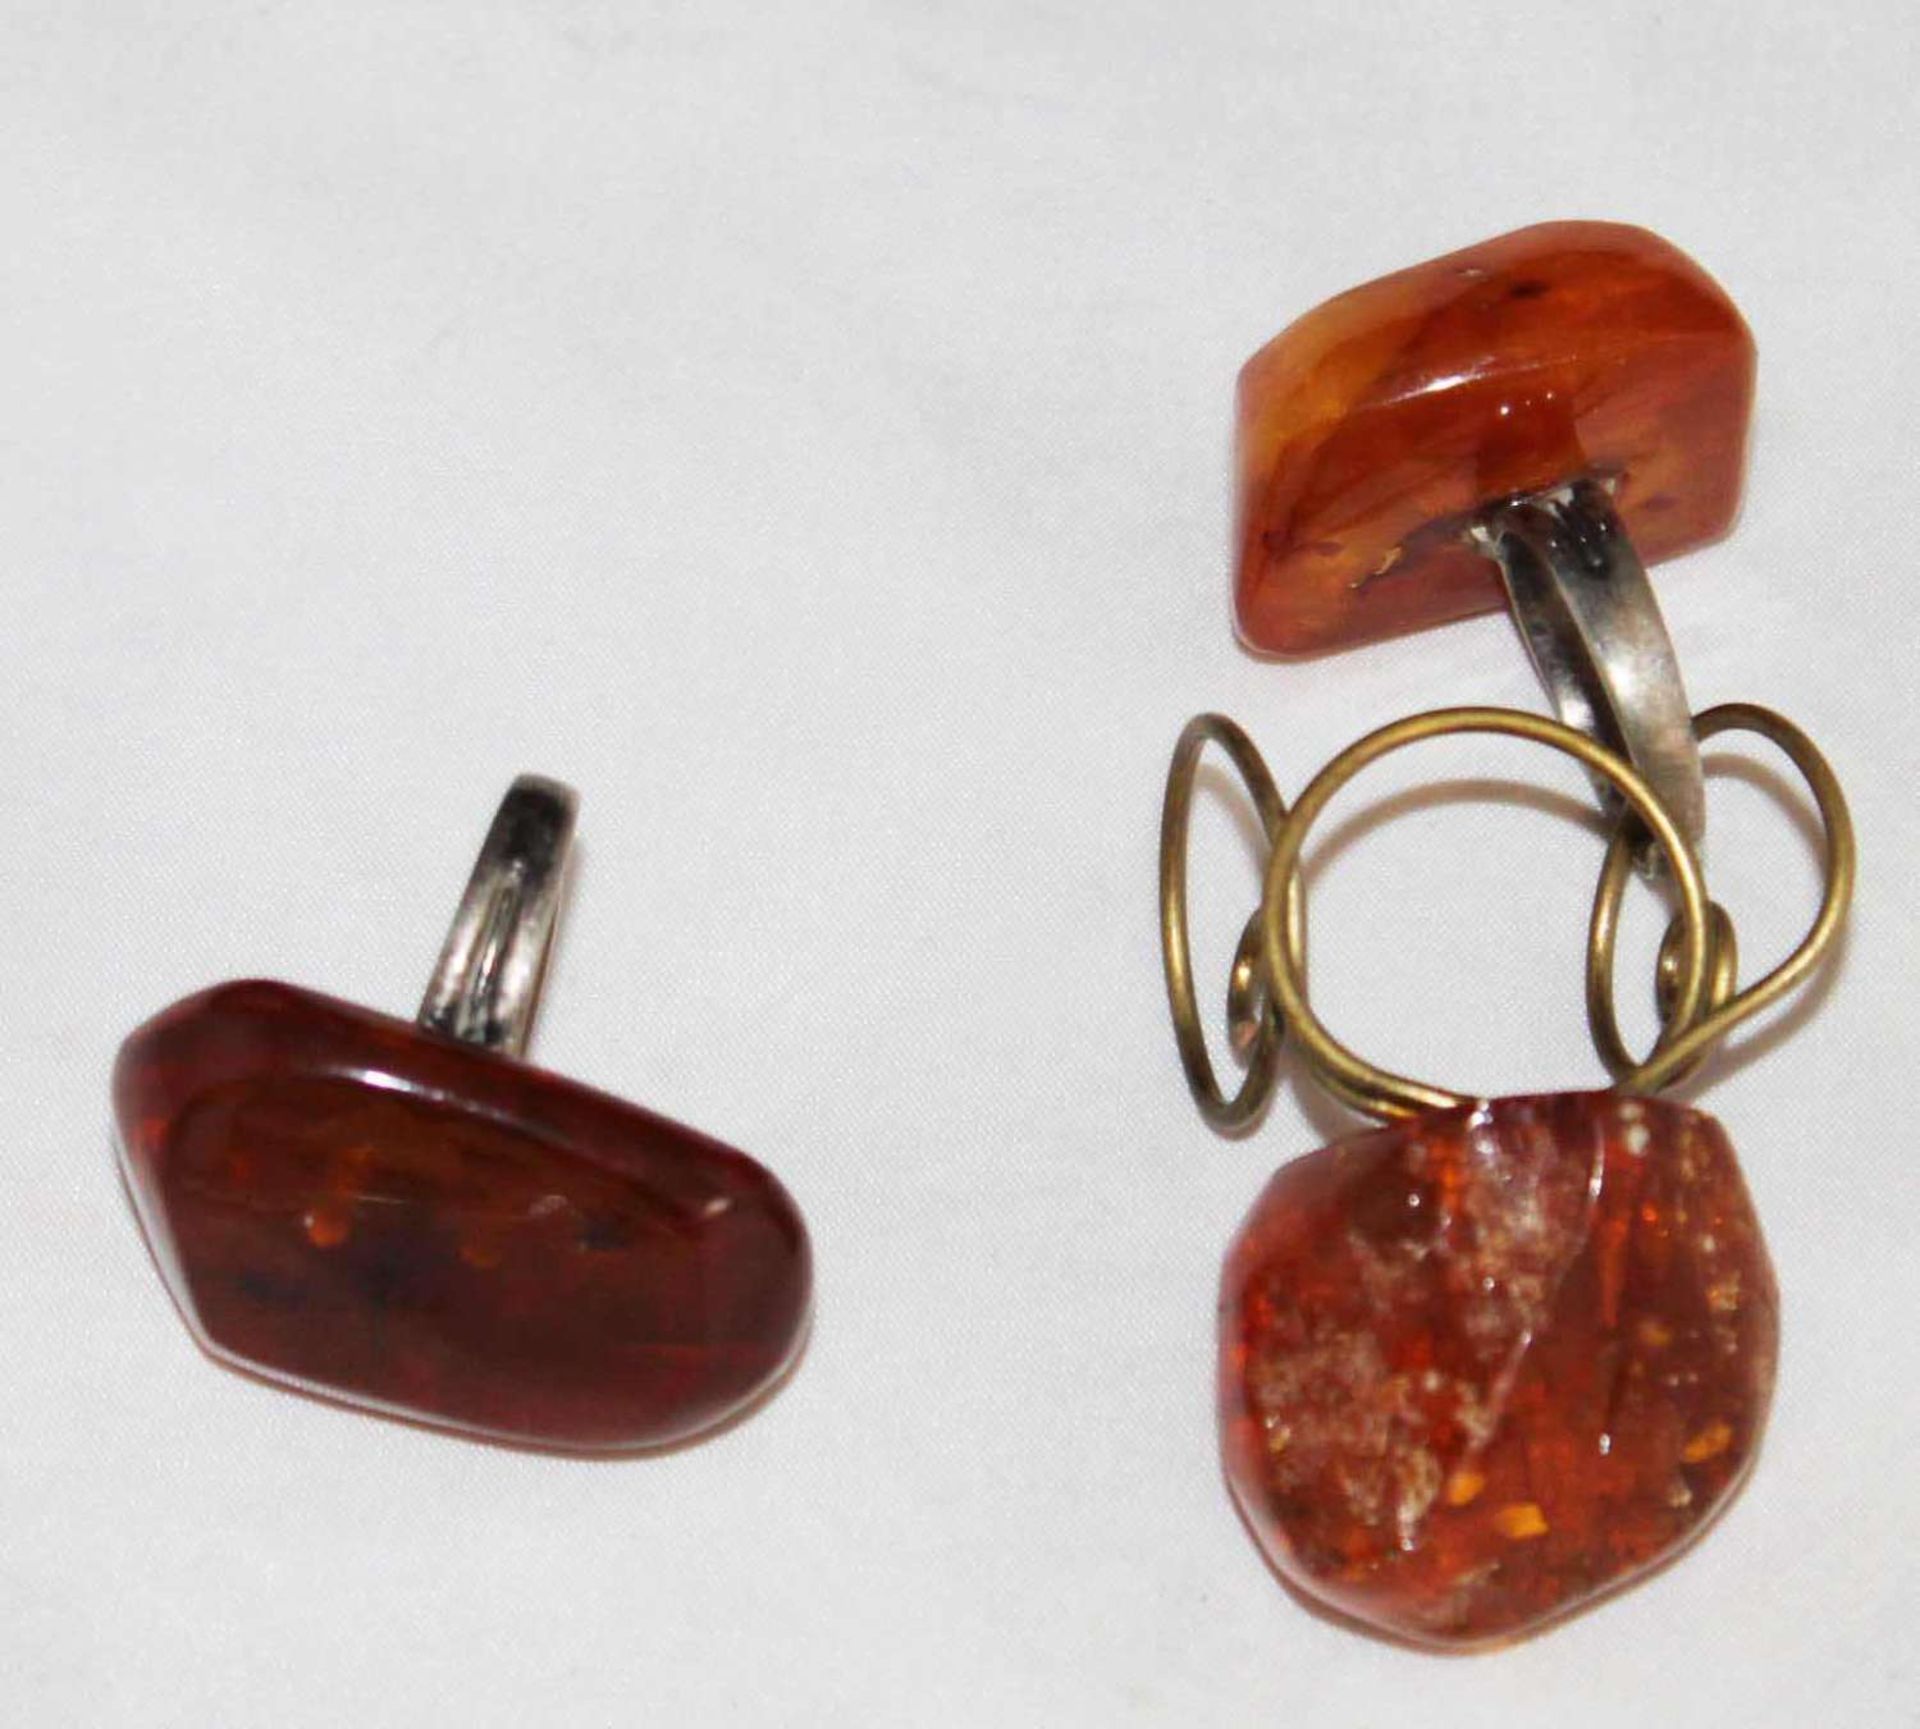 3 Bernsteinringe, ausgefallenes Design 3 amber rings, fancy design